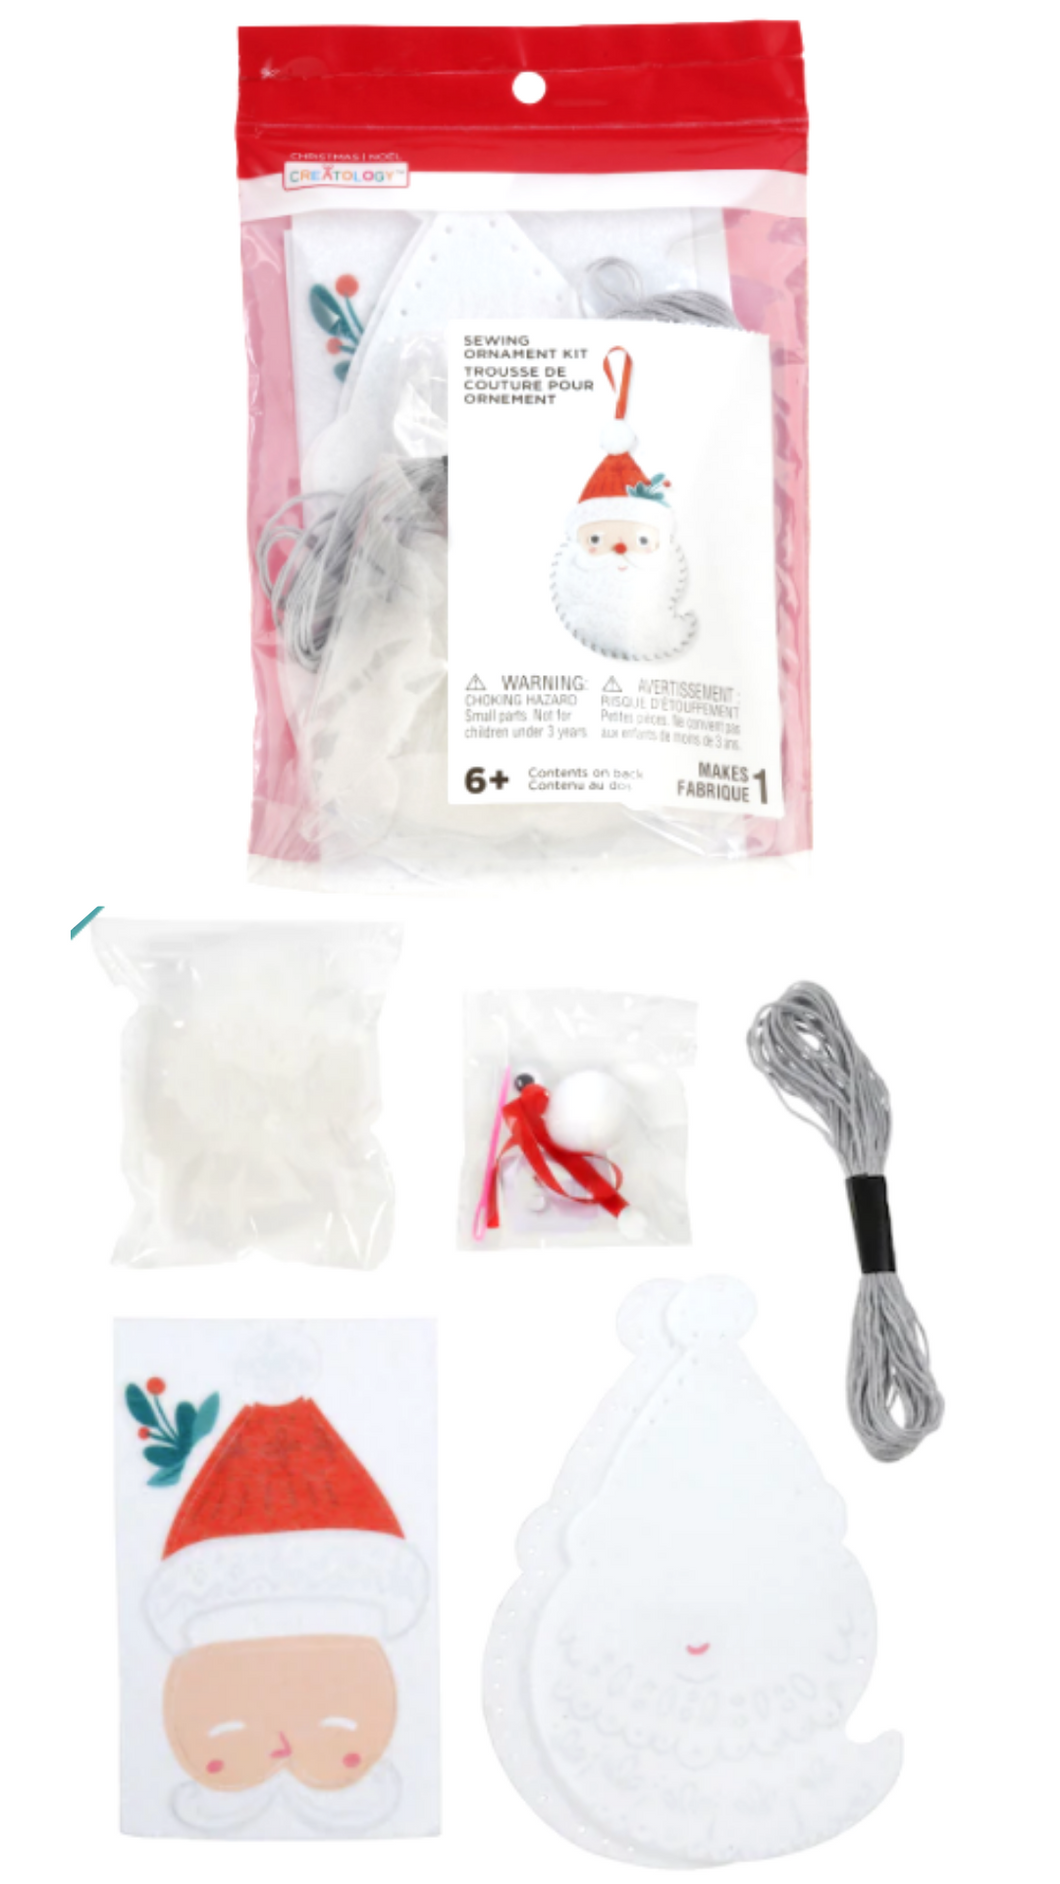 Santa Sewing Ornament Kit by Creatology™